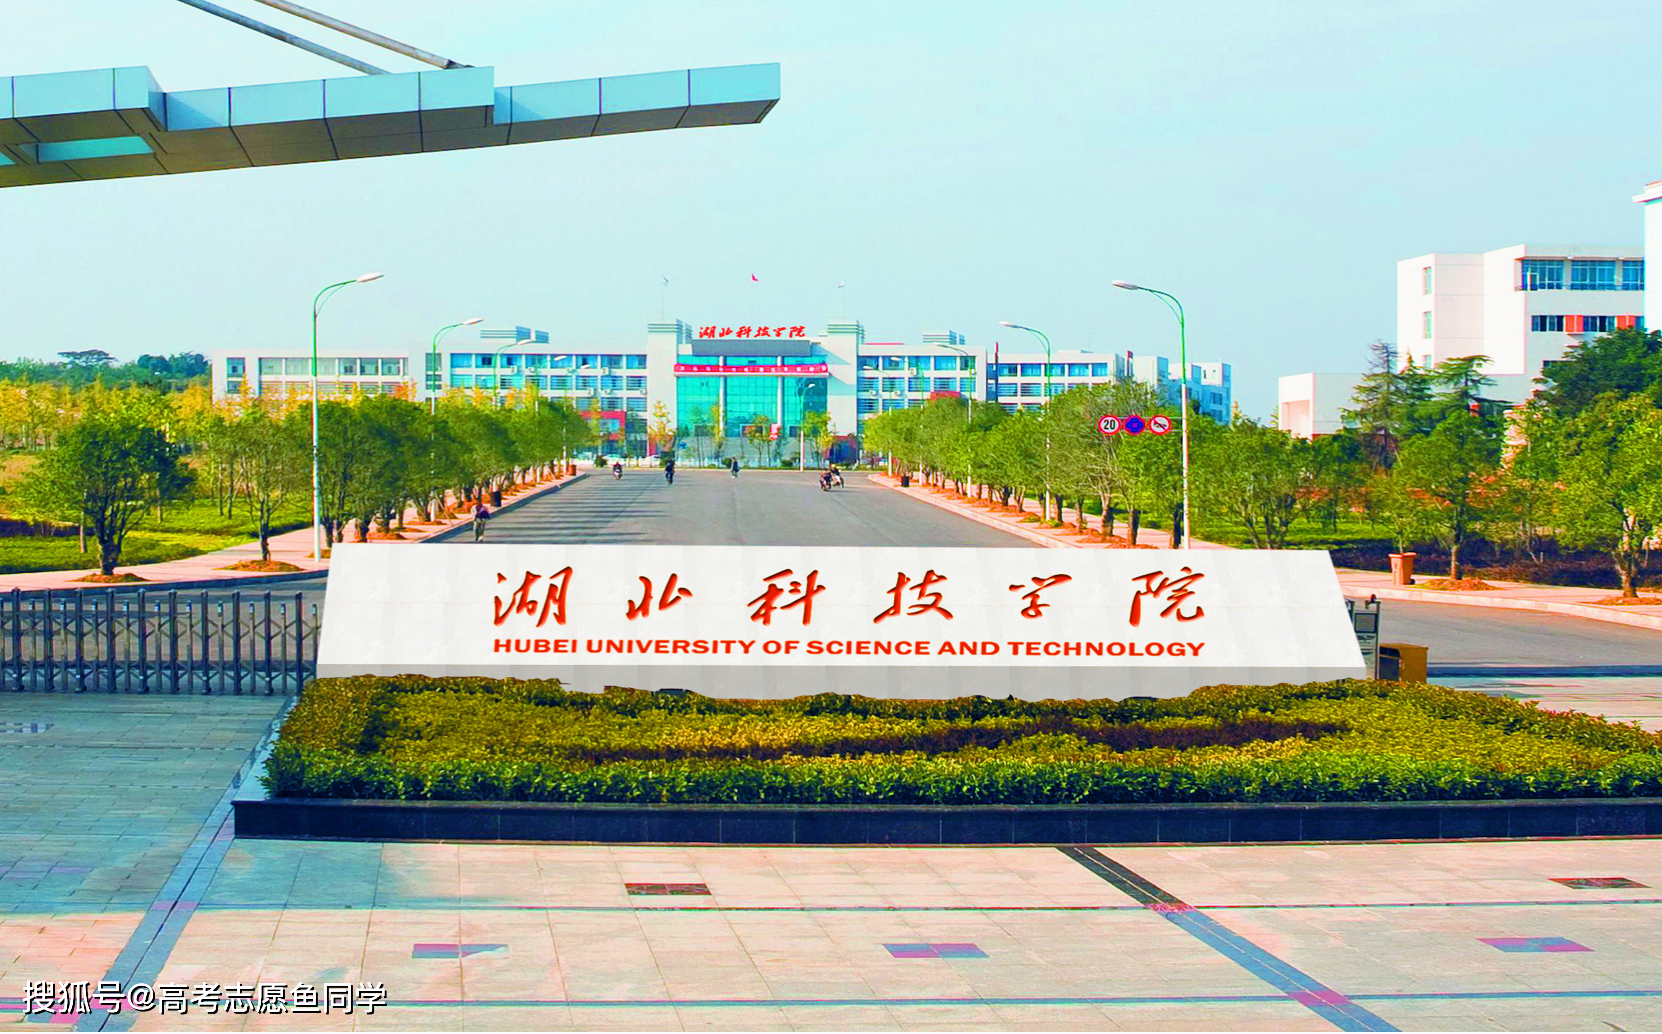 7,湖北科技学院:位于咸宁市,有温泉,咸安2个校区;是一所很有地方特色